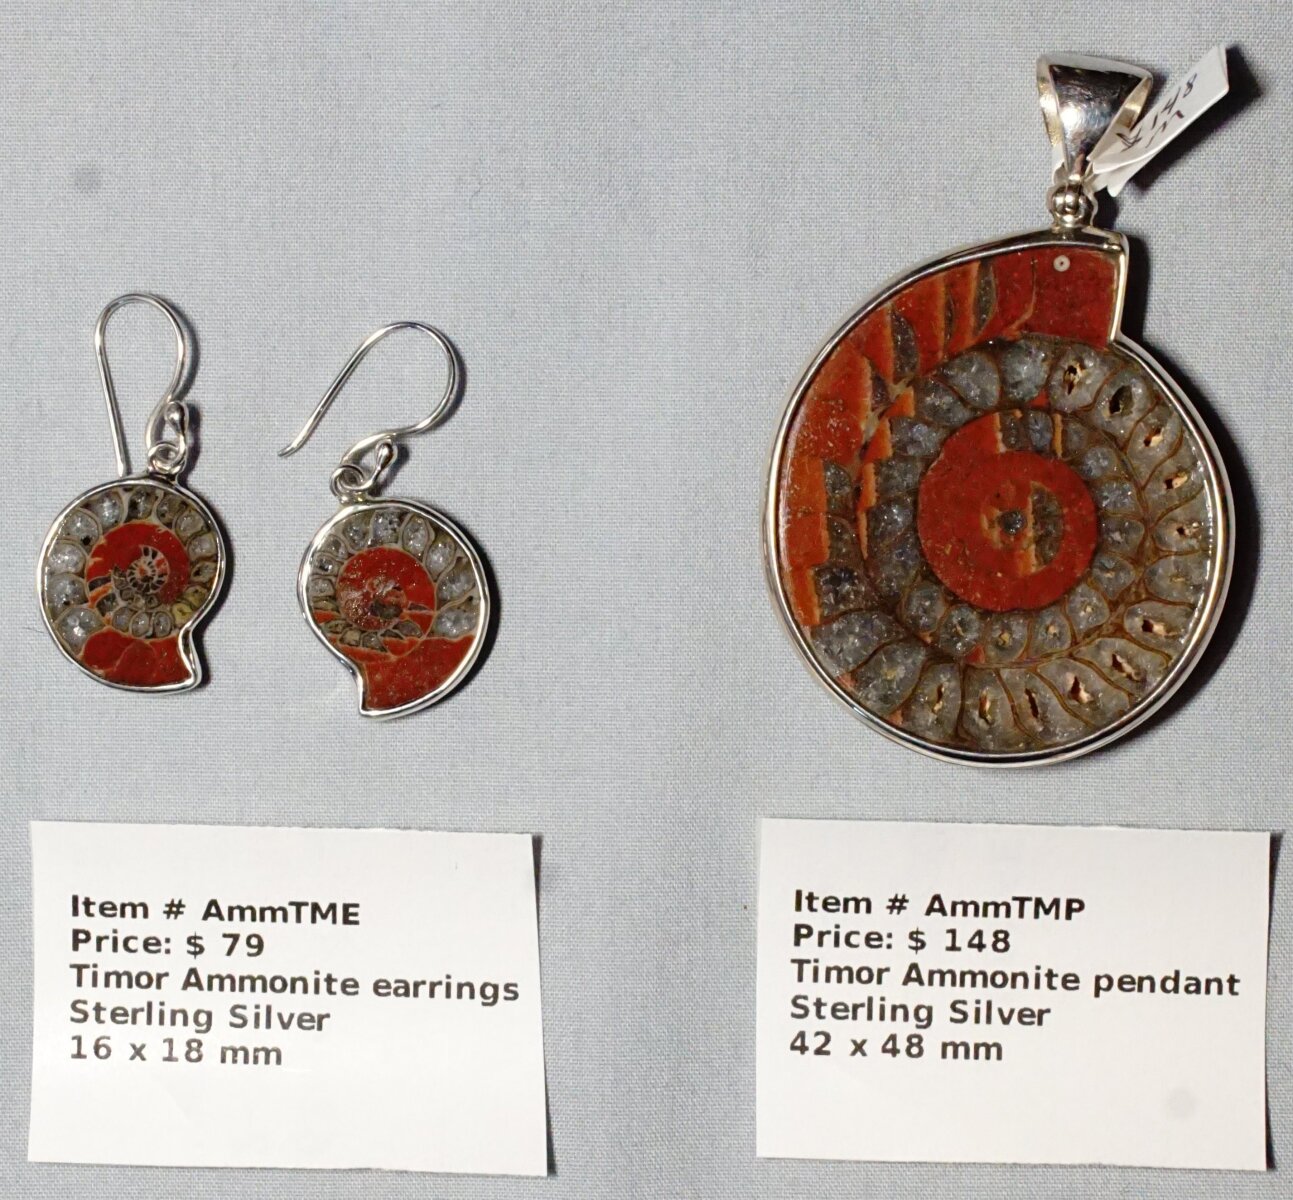 Scaled image AMMTME.JPG: Item # AmmTME - Timor Ammonite earrings $79
Itme # AmmTMP - Timor Ammonite pendant $148� 